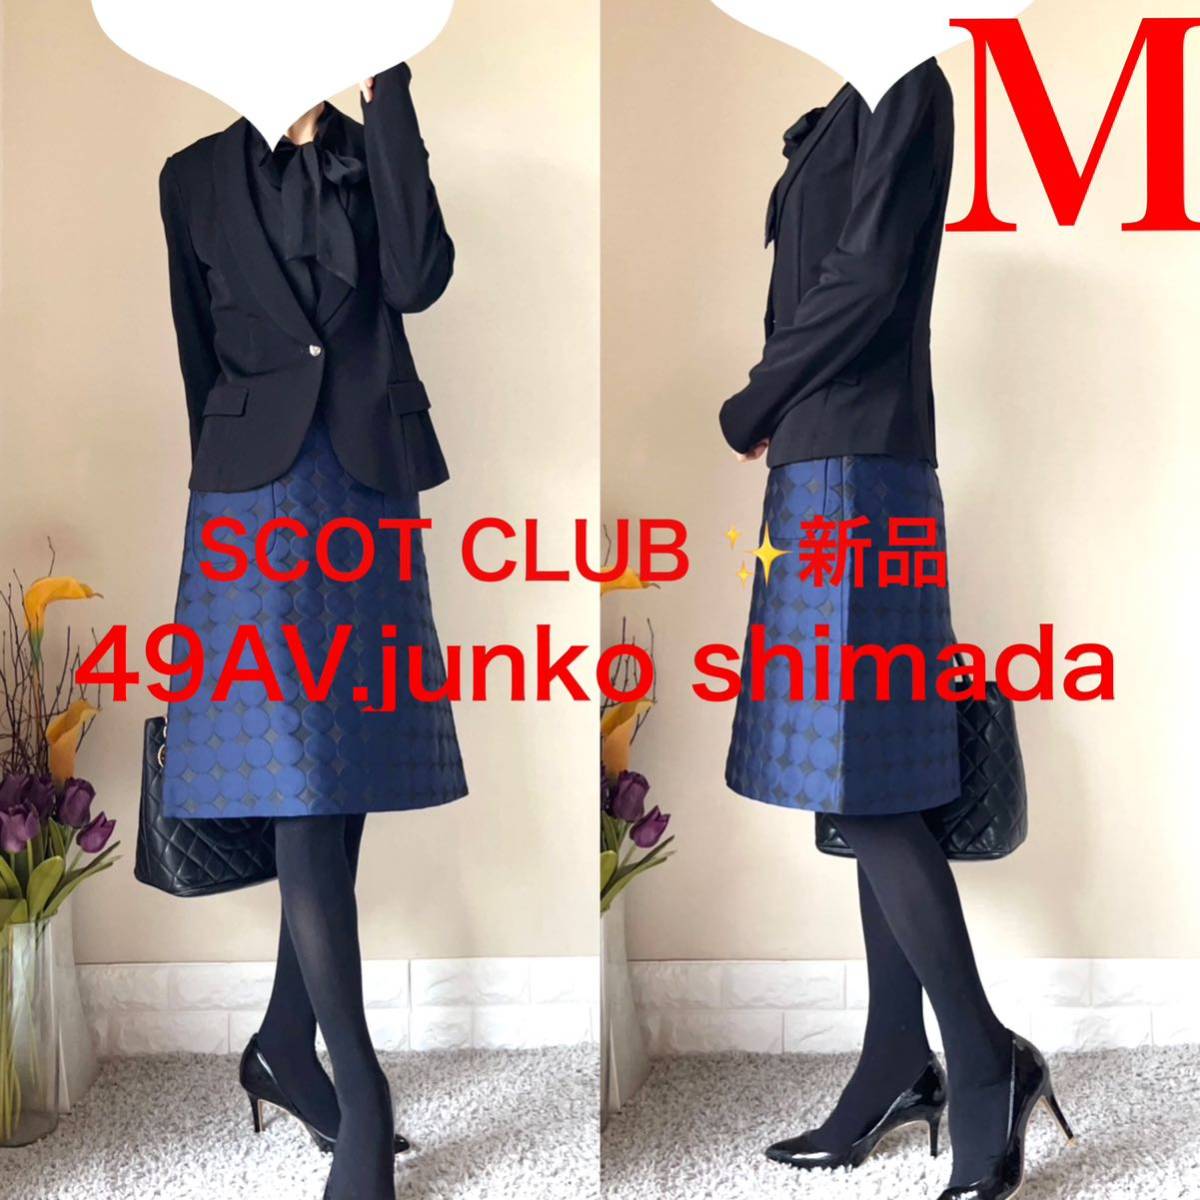 新品含 M スーツ スコットクラブ ジャケット ジュンコシマダ スカート 